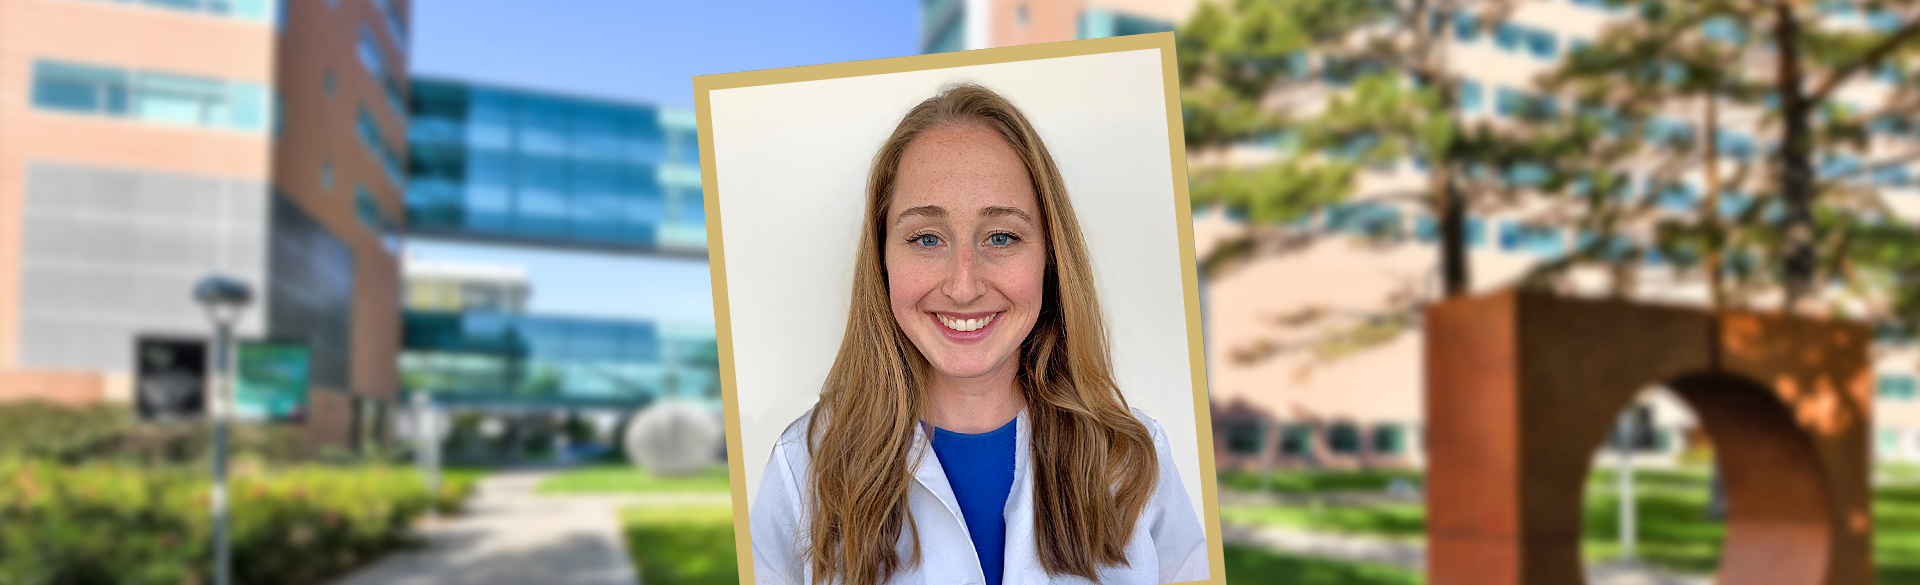 Eliza Baird-Daniel Graduation | CU School of Medicine | Aurora, Colorado